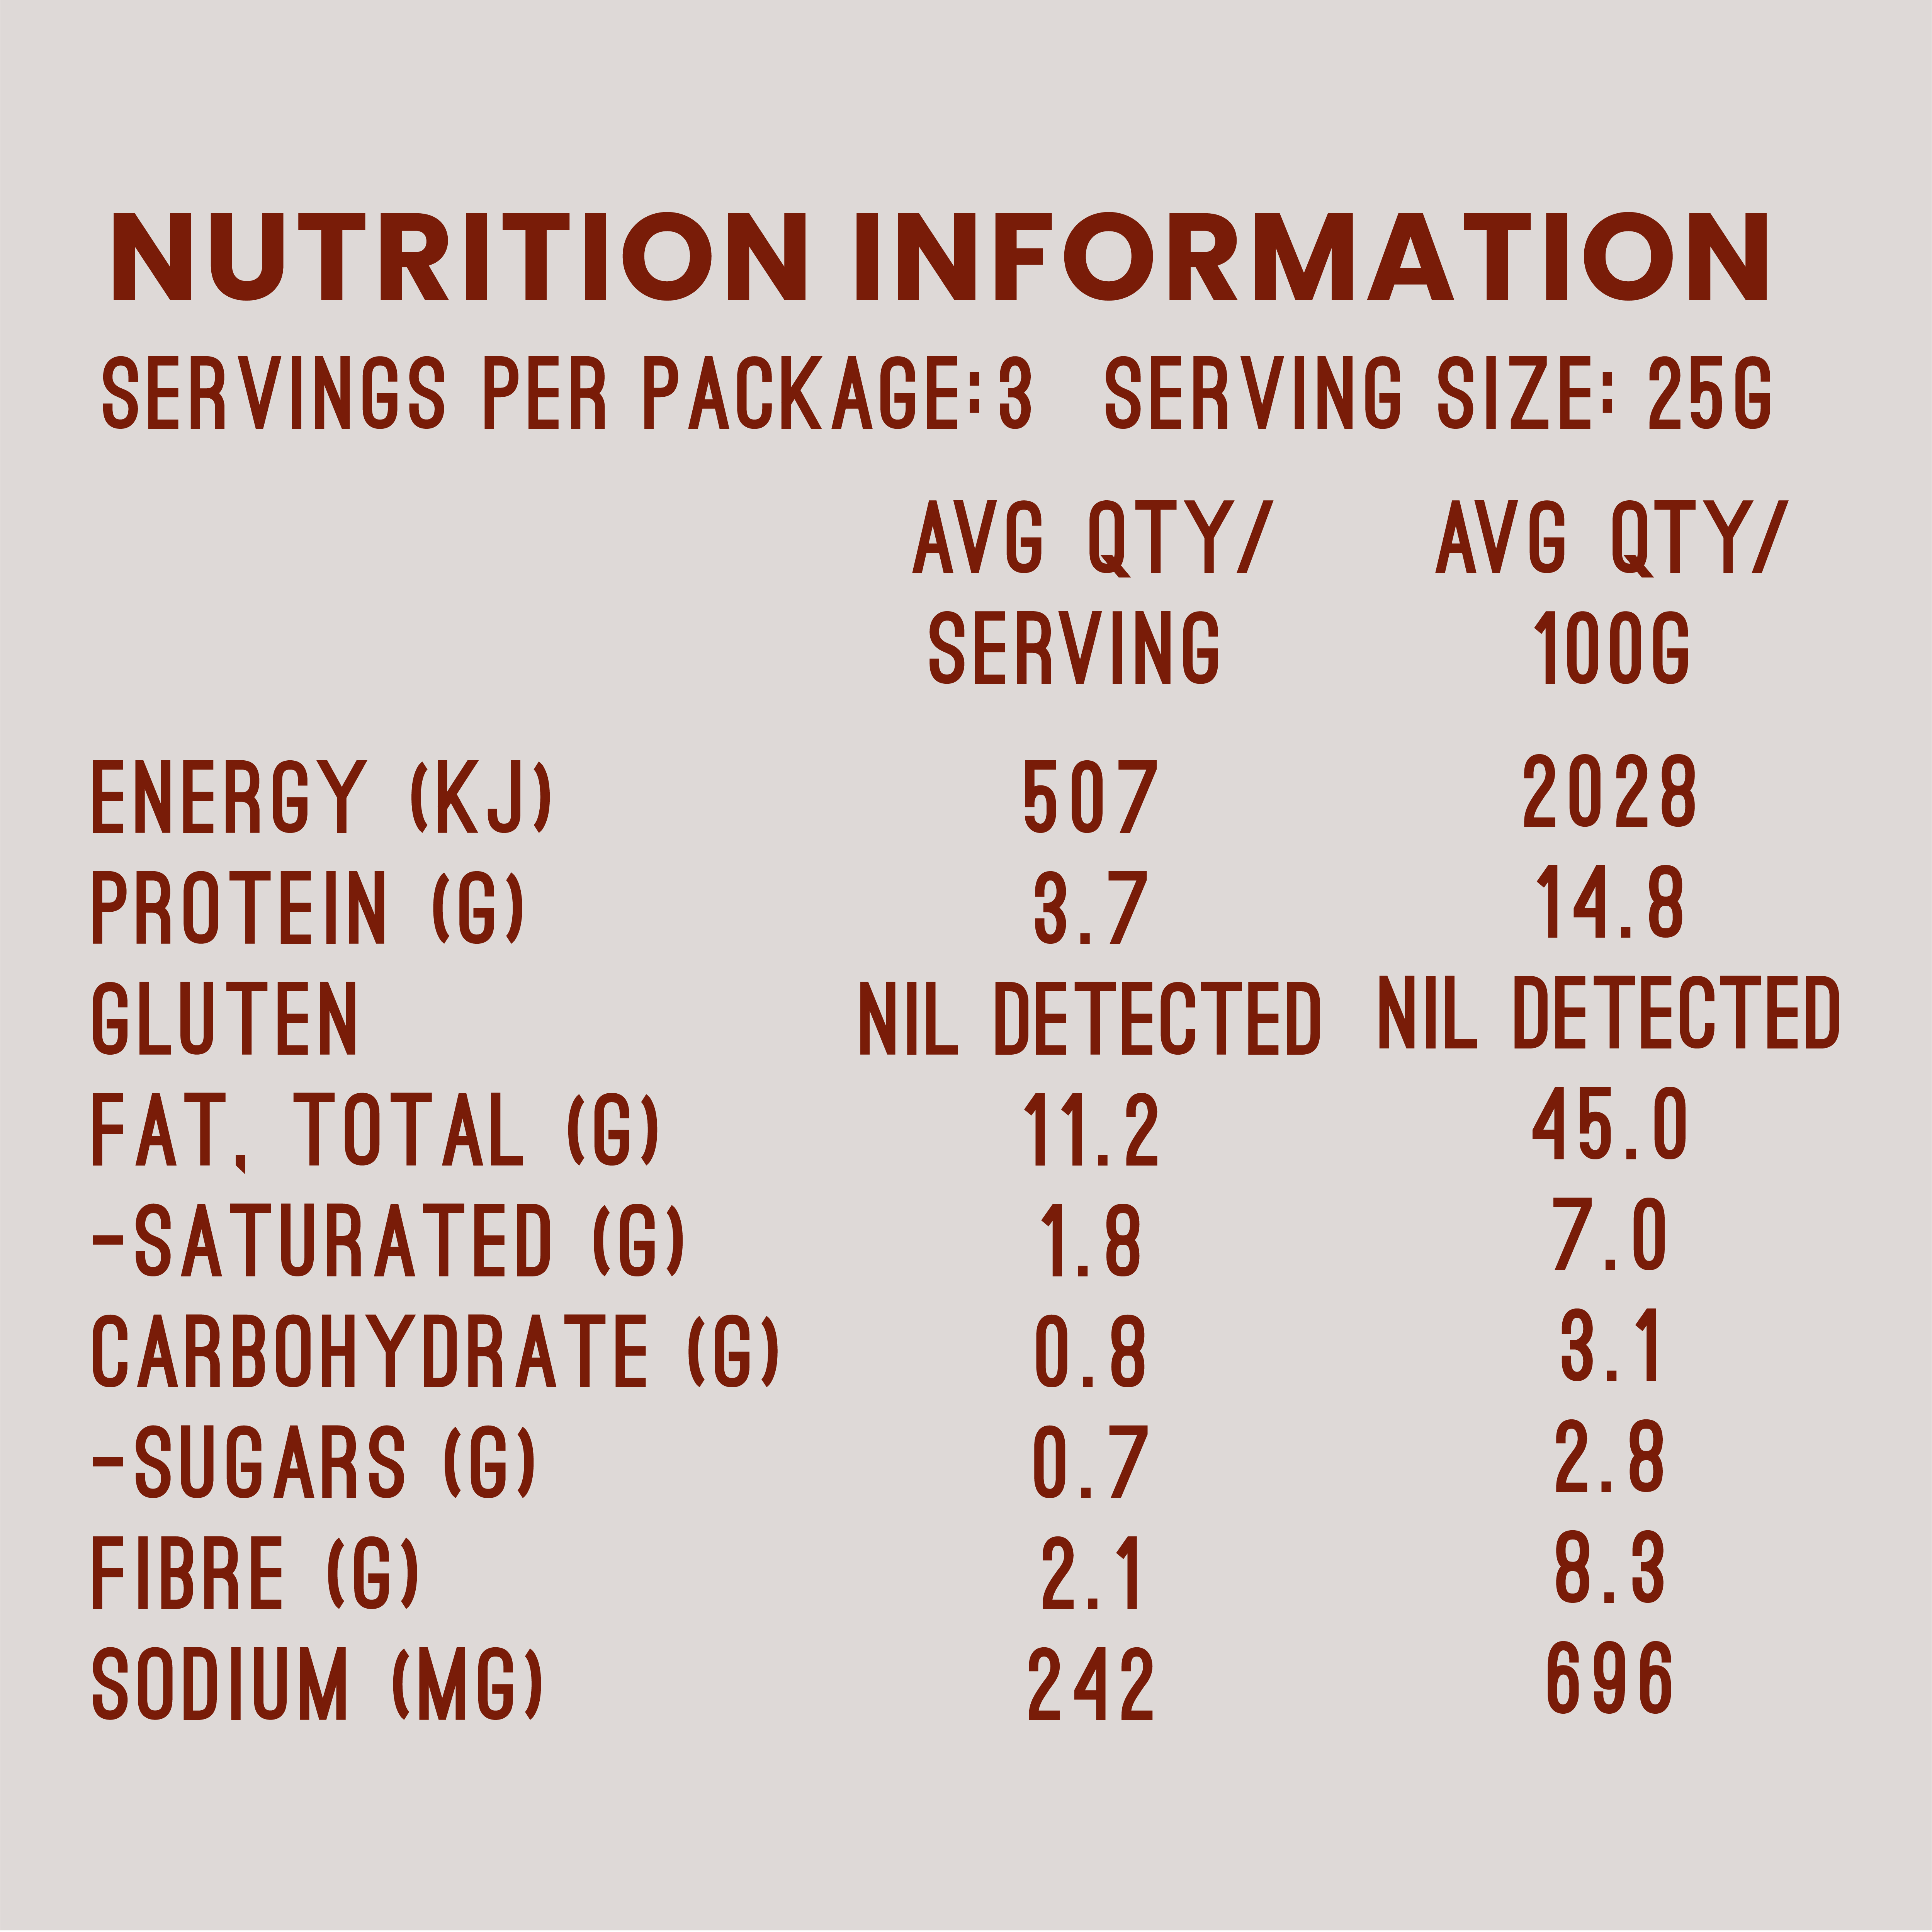 Salt and Pepper Nutrition Information